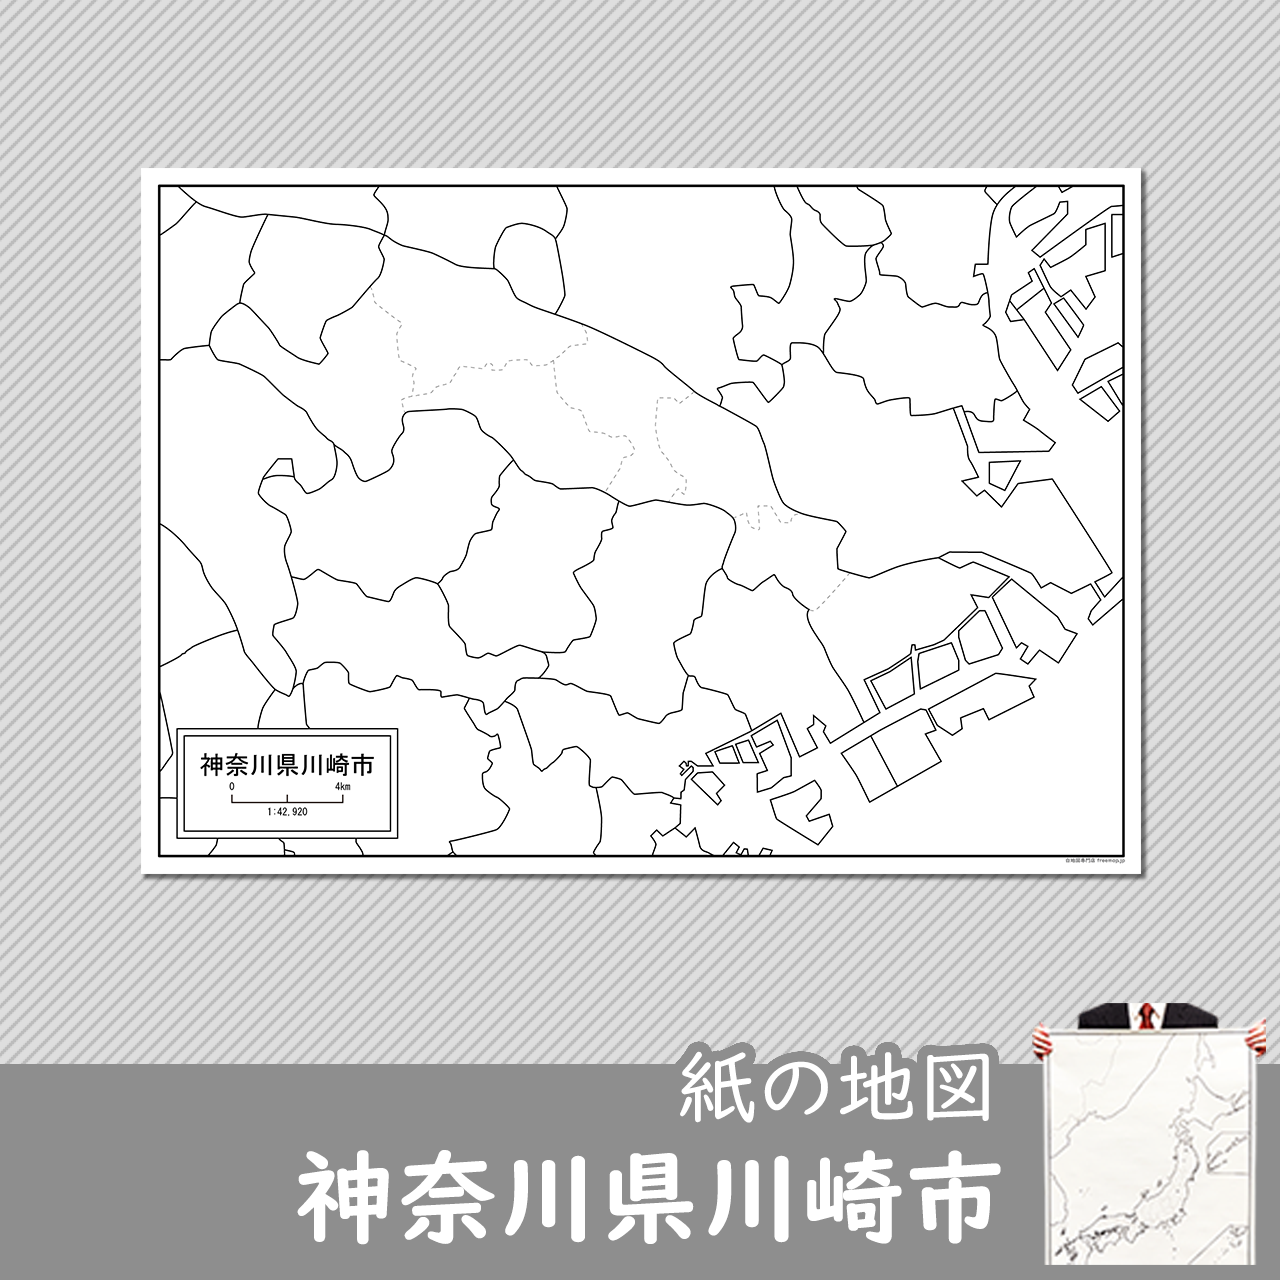 神奈川県川崎市の紙の白地図のサムネイル